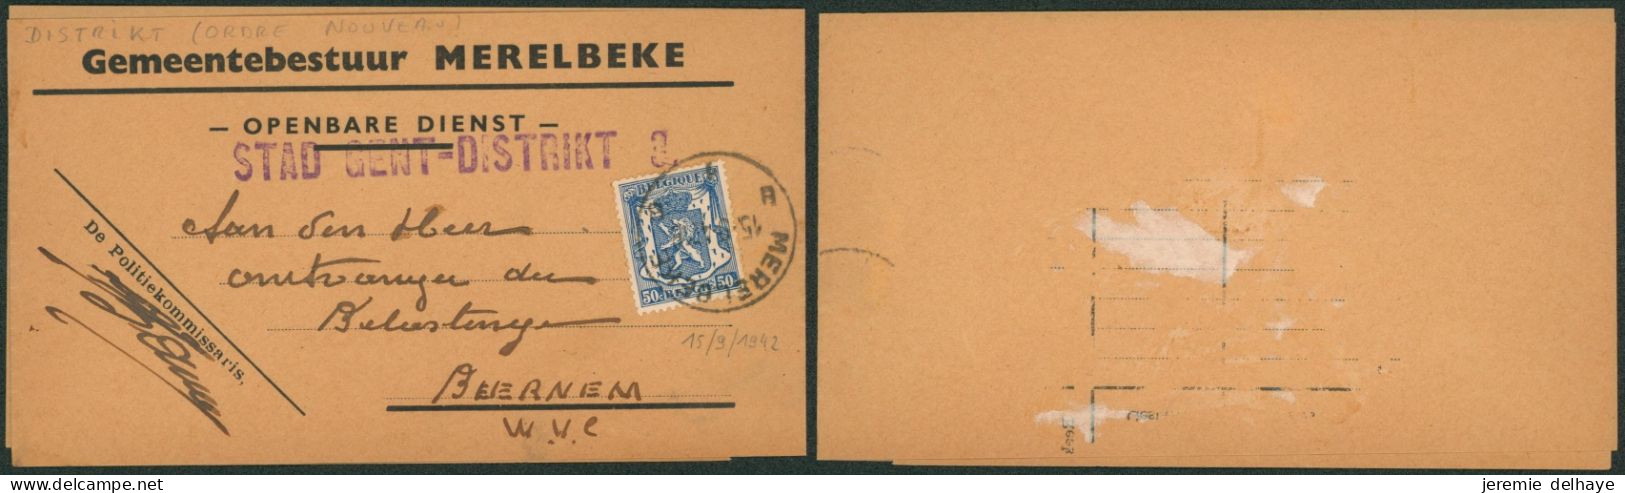 Petit Sceau De L'état 50ctm Sur Manchon "Gementebestuur MERELBEKE" + Griffe Violette STAD GENT DISTRIKT 3 > Beernem - Linear Postmarks